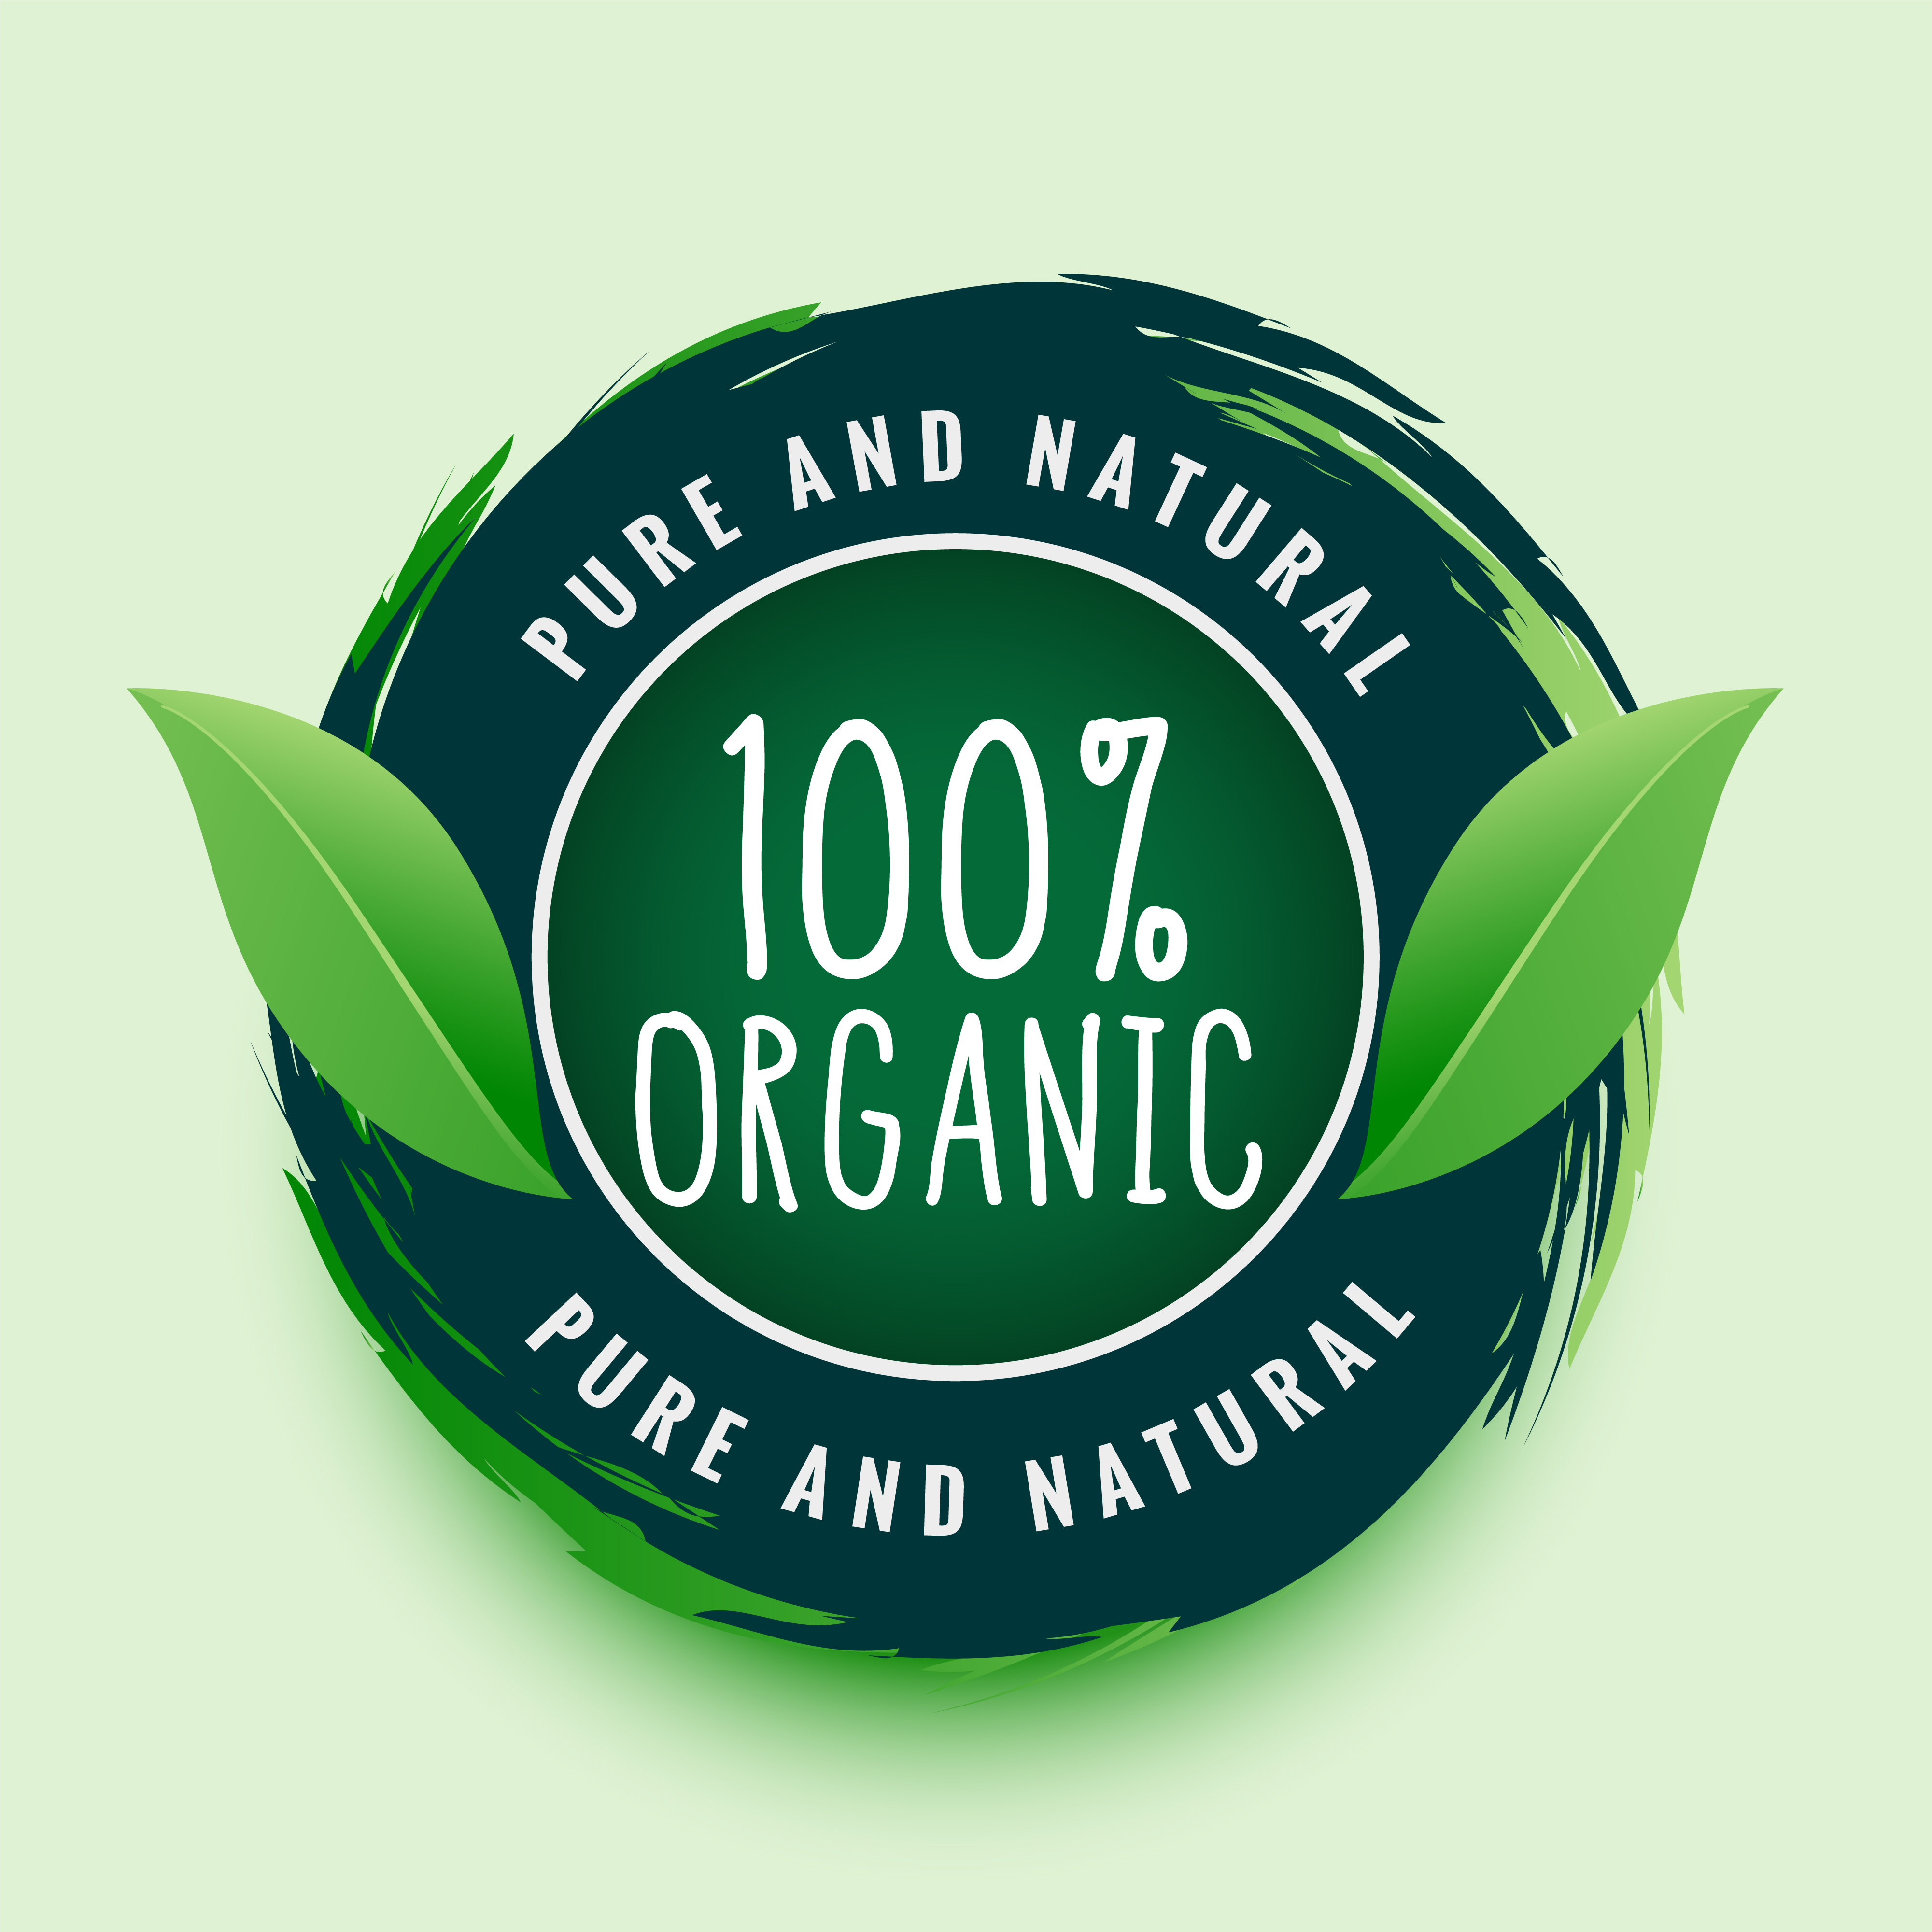 100% organic pure & natural - Bhadra Ayurveda